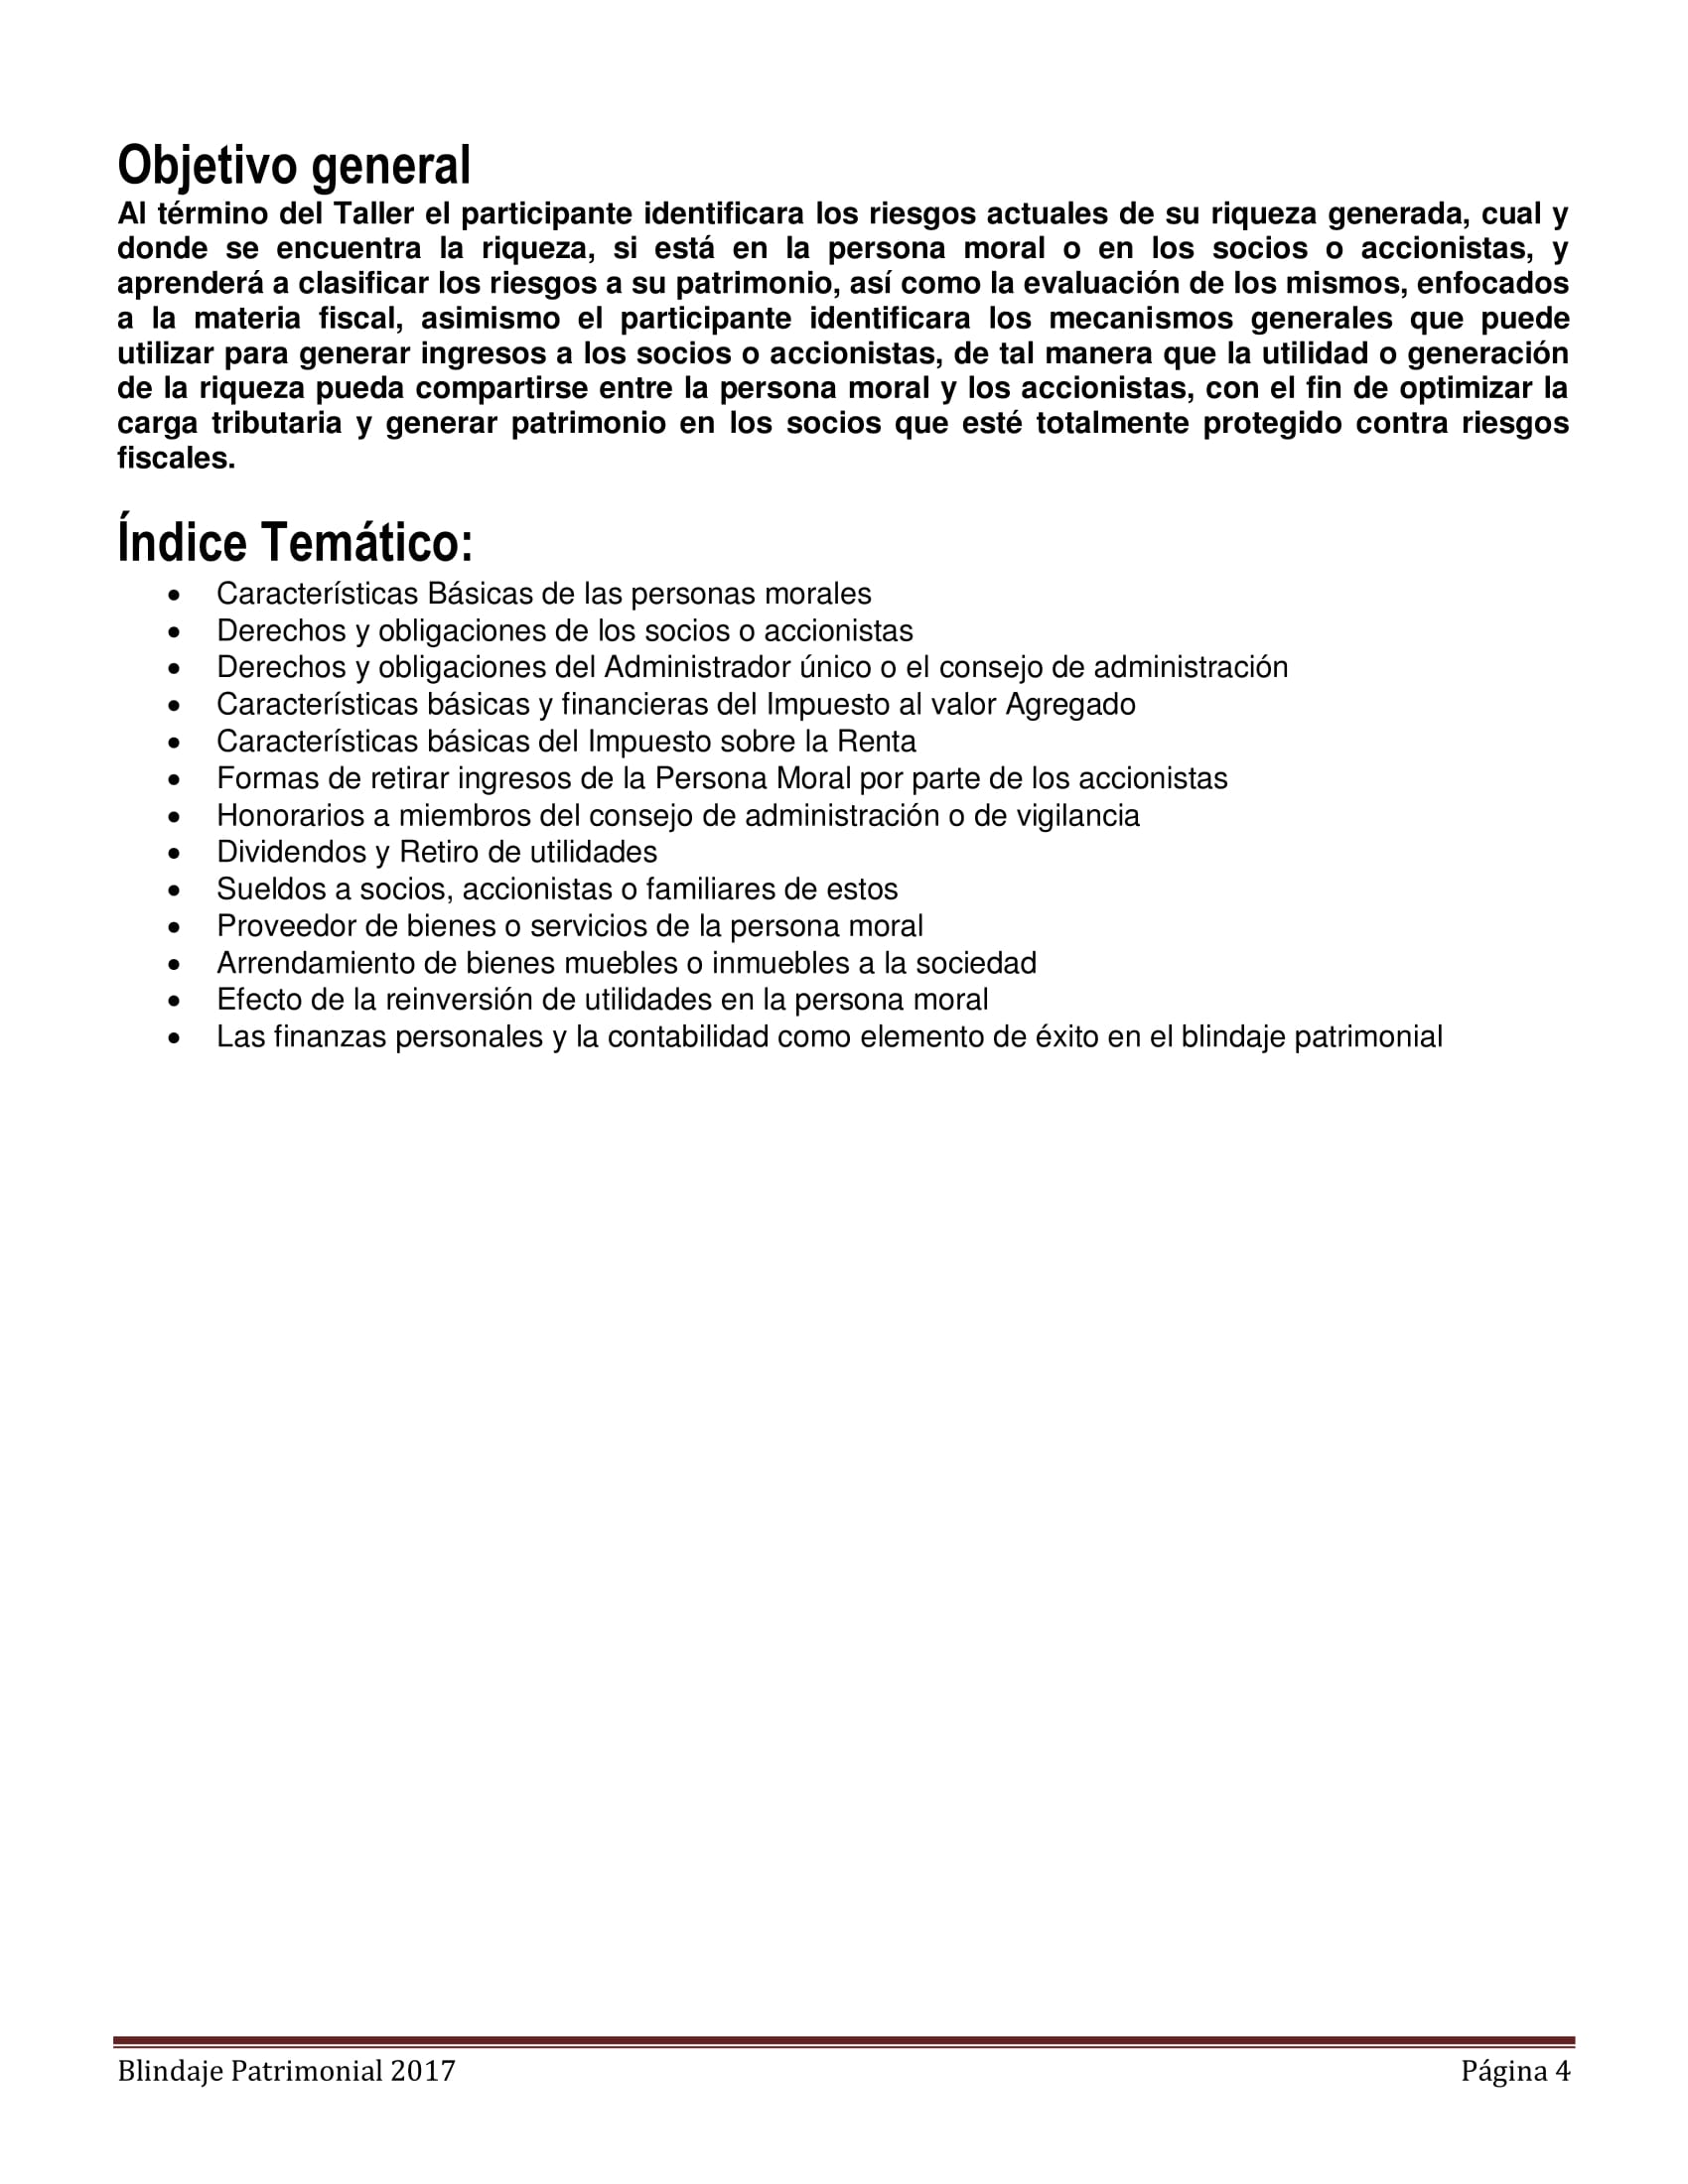 Libro_de_Consulta_BLINDAJE_PATRIMONIAL-04